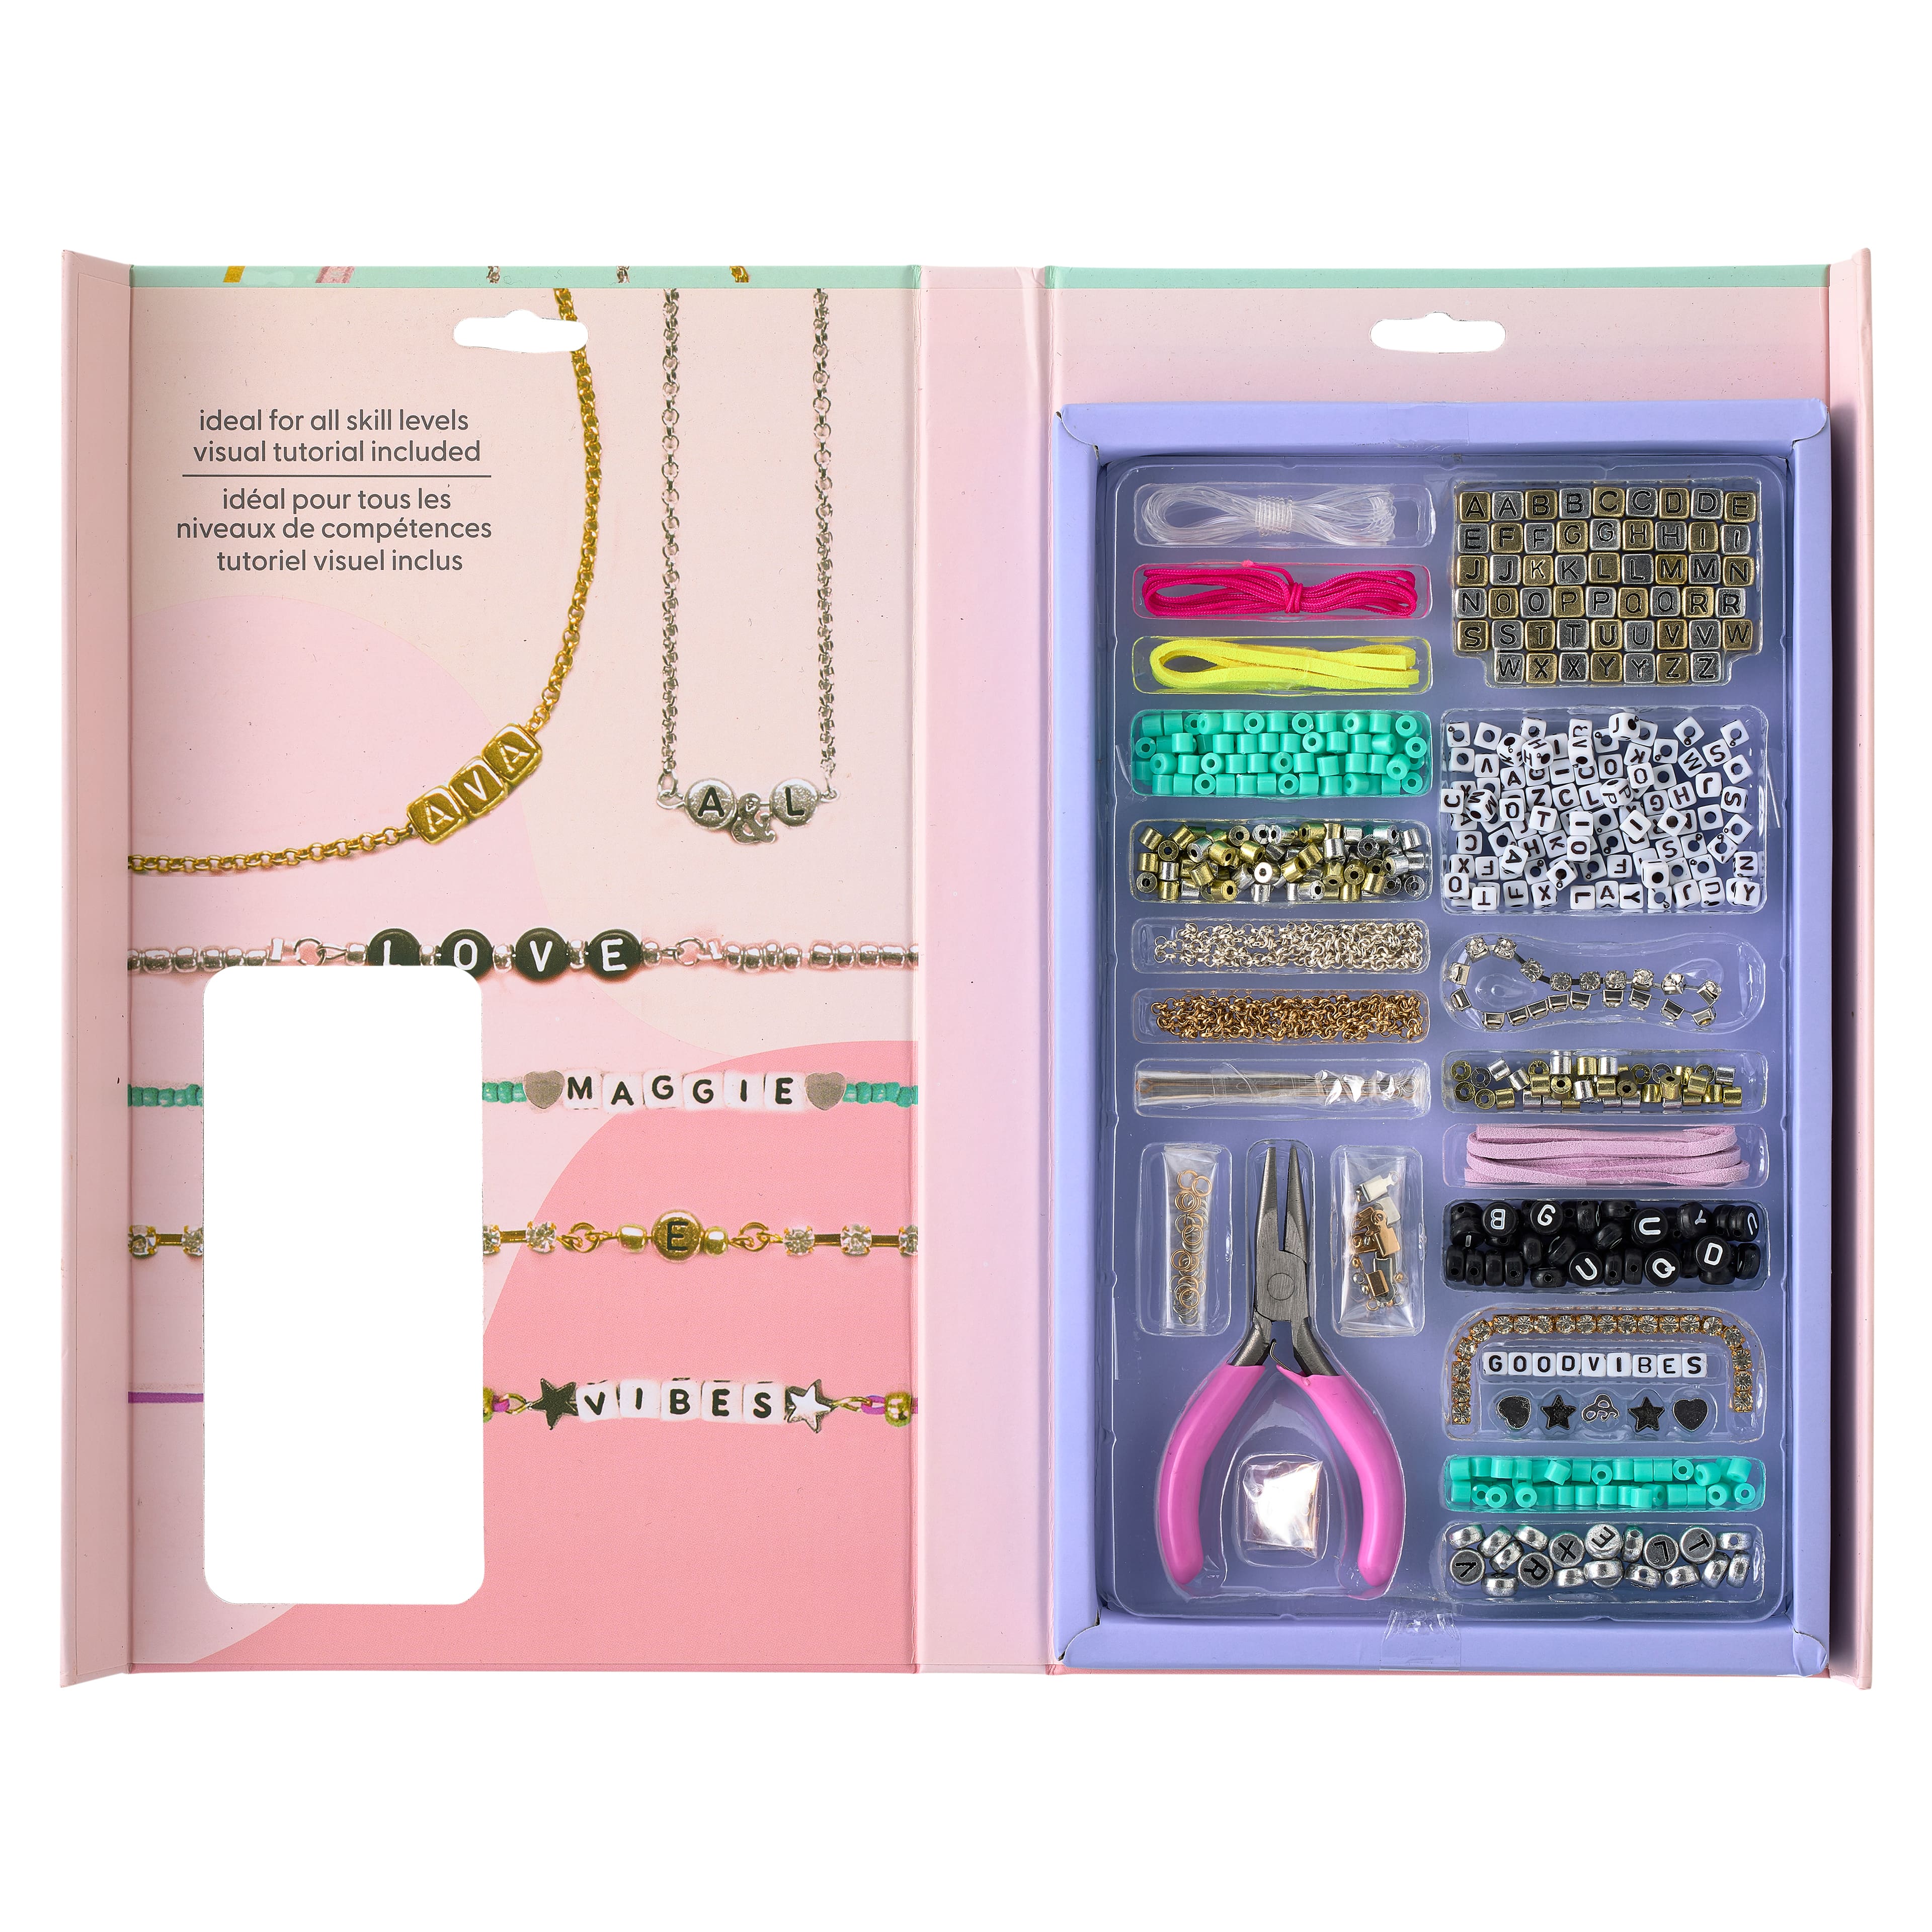 True2U DIY Alphabet Jewelry Kit